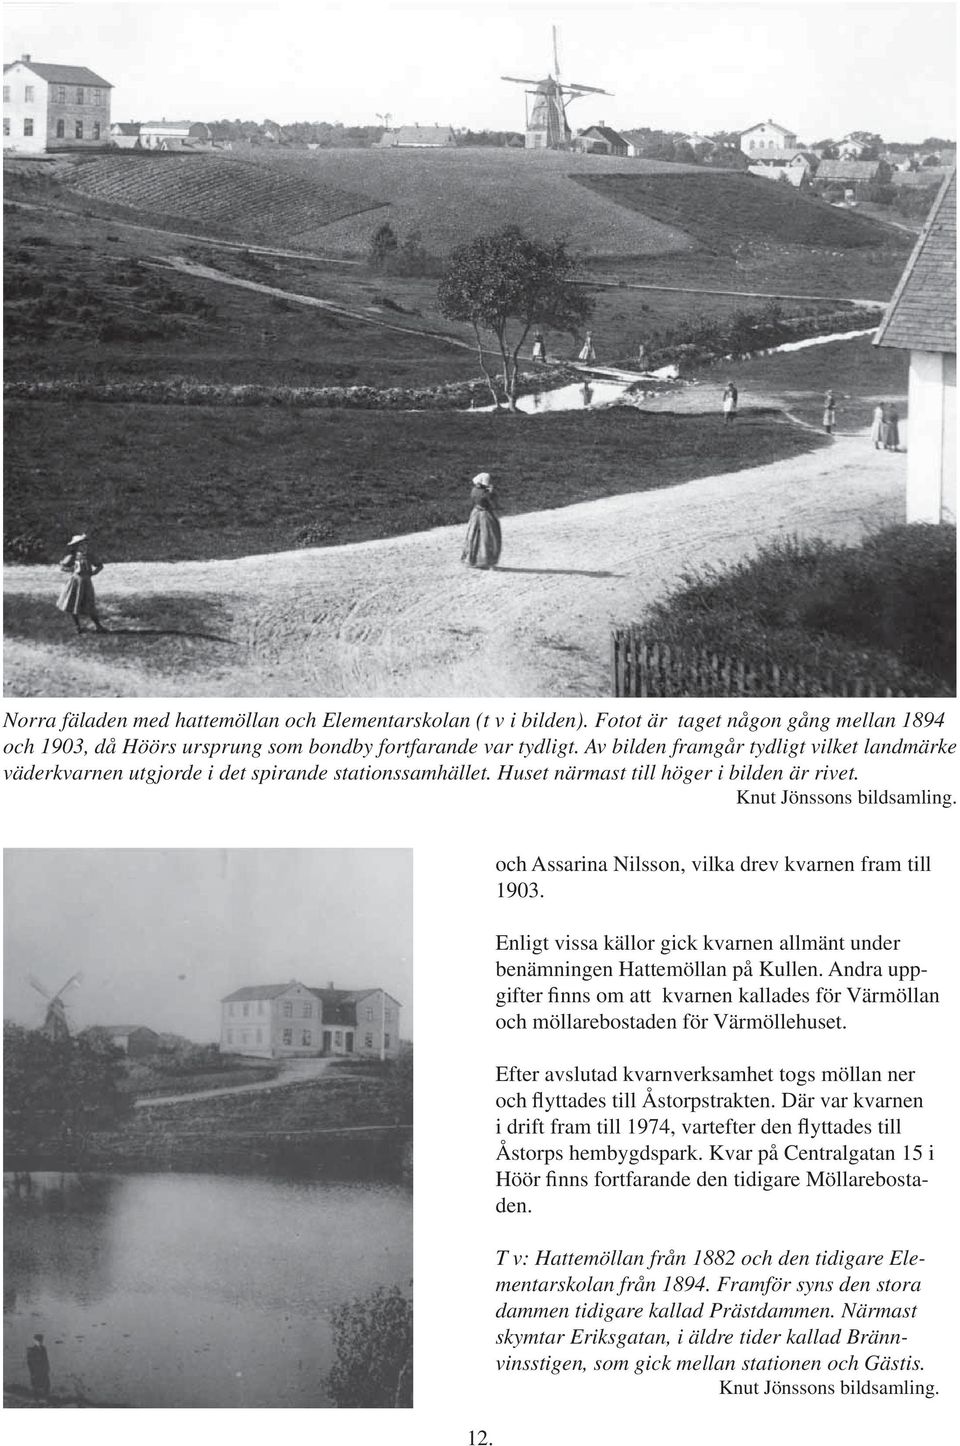 och Assarina Nilsson, vilka drev kvarnen fram till 1903. Enligt vissa källor gick kvarnen allmänt under benämningen Hattemöllan på Kullen.